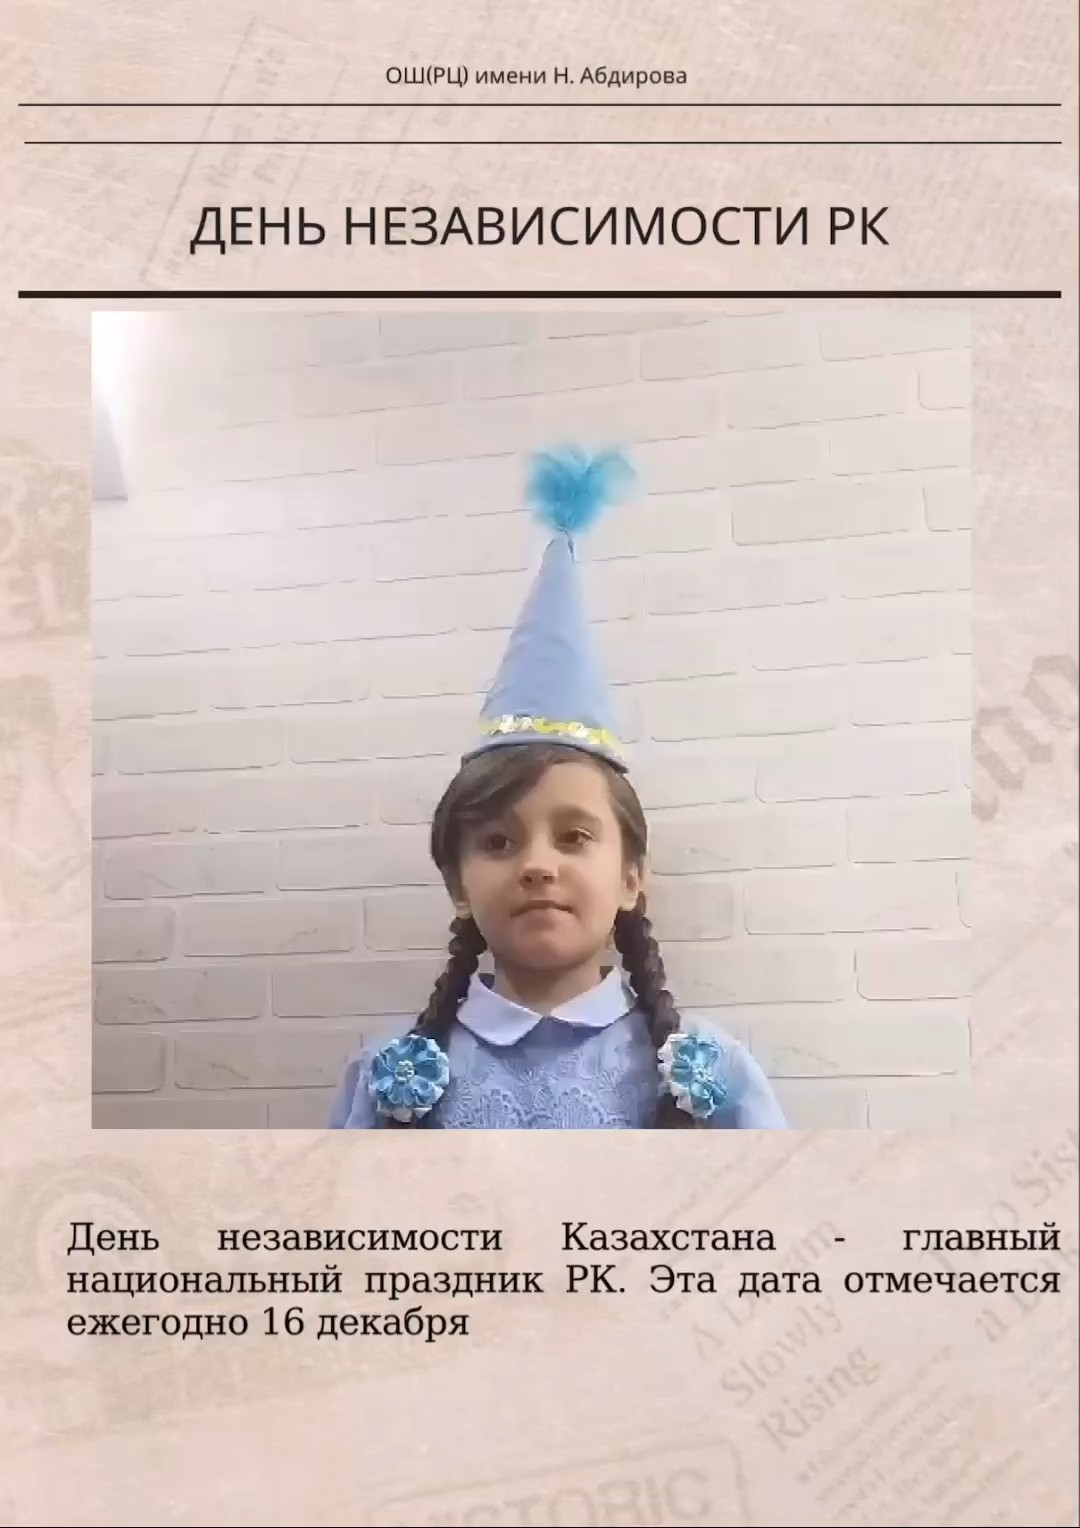 Прокопьева Дарья поздравляет с Днем Независимости РК!